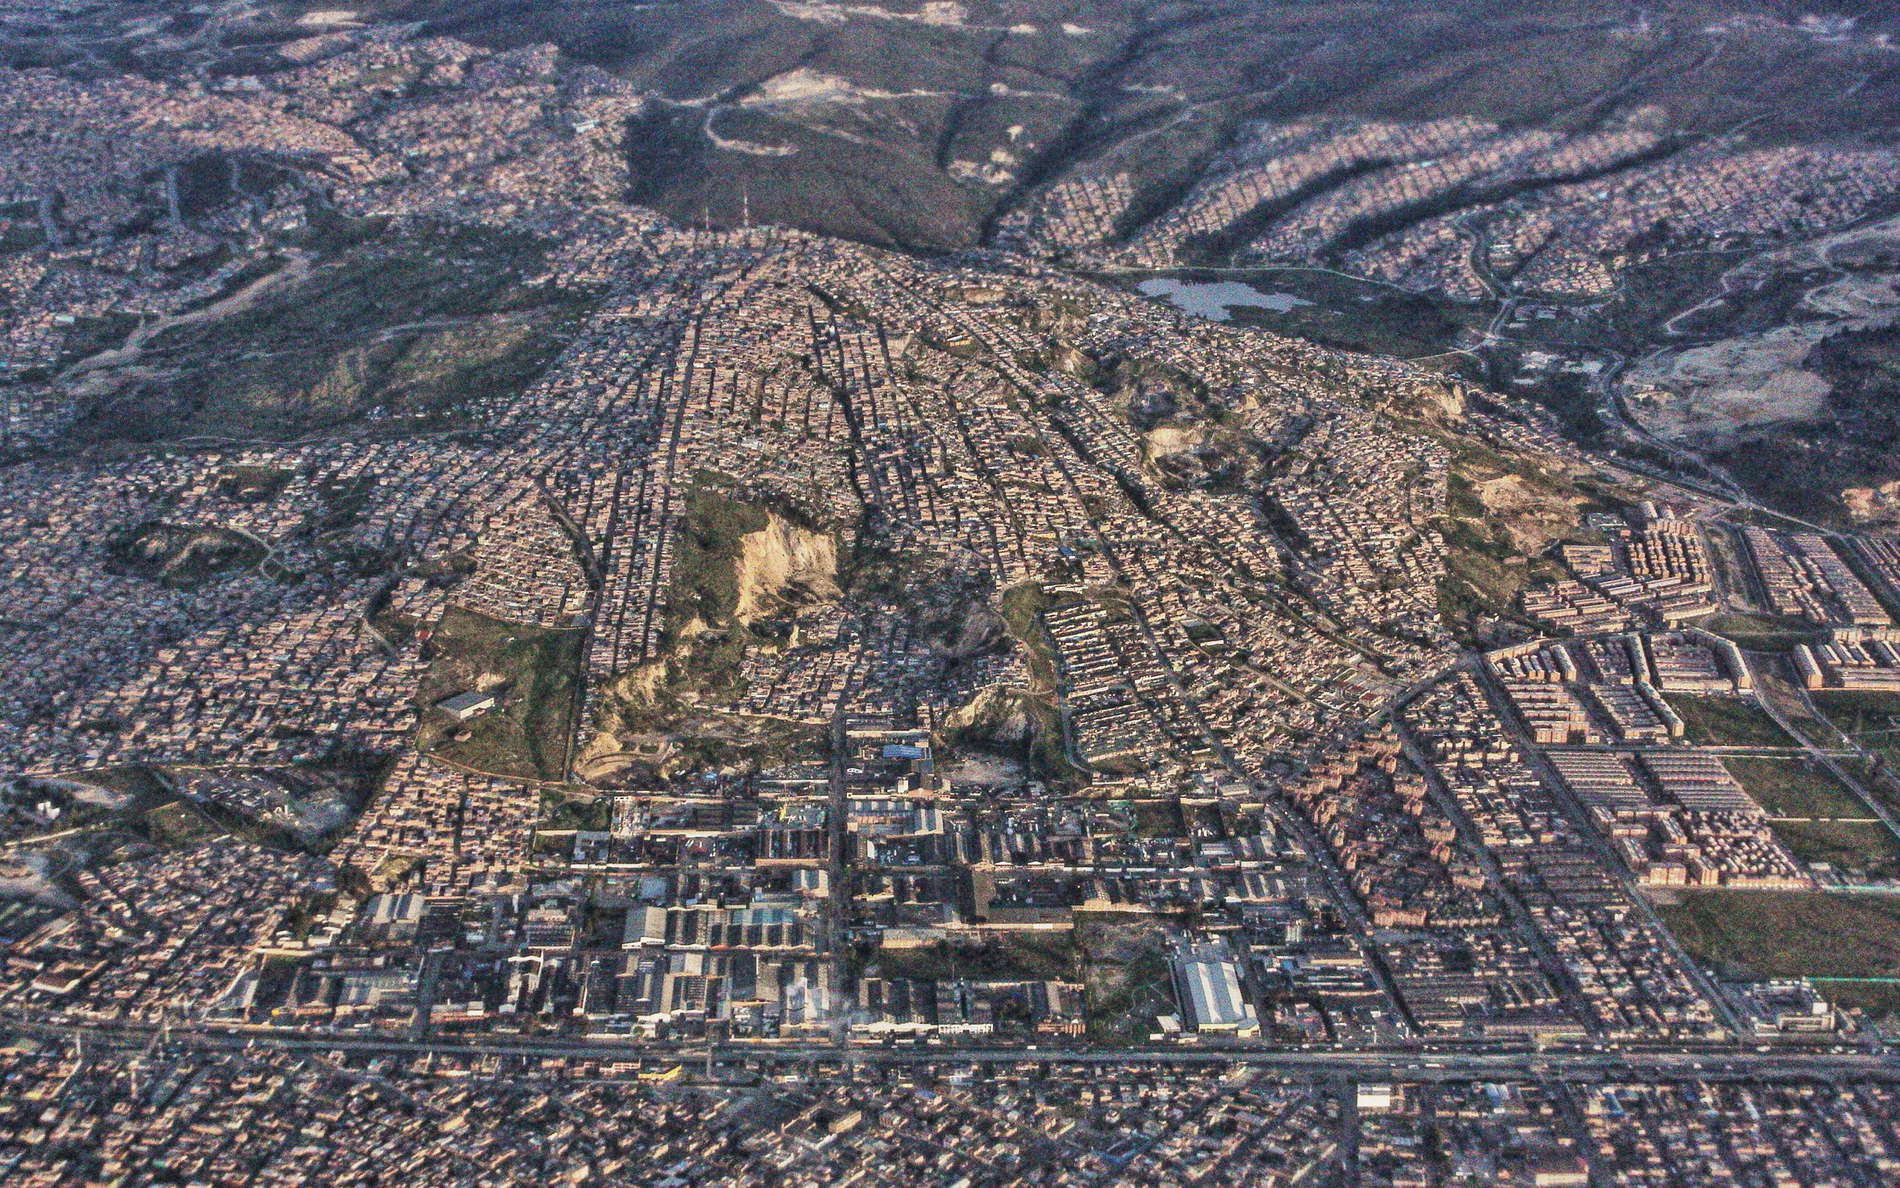 Bogotá  |  Residential area